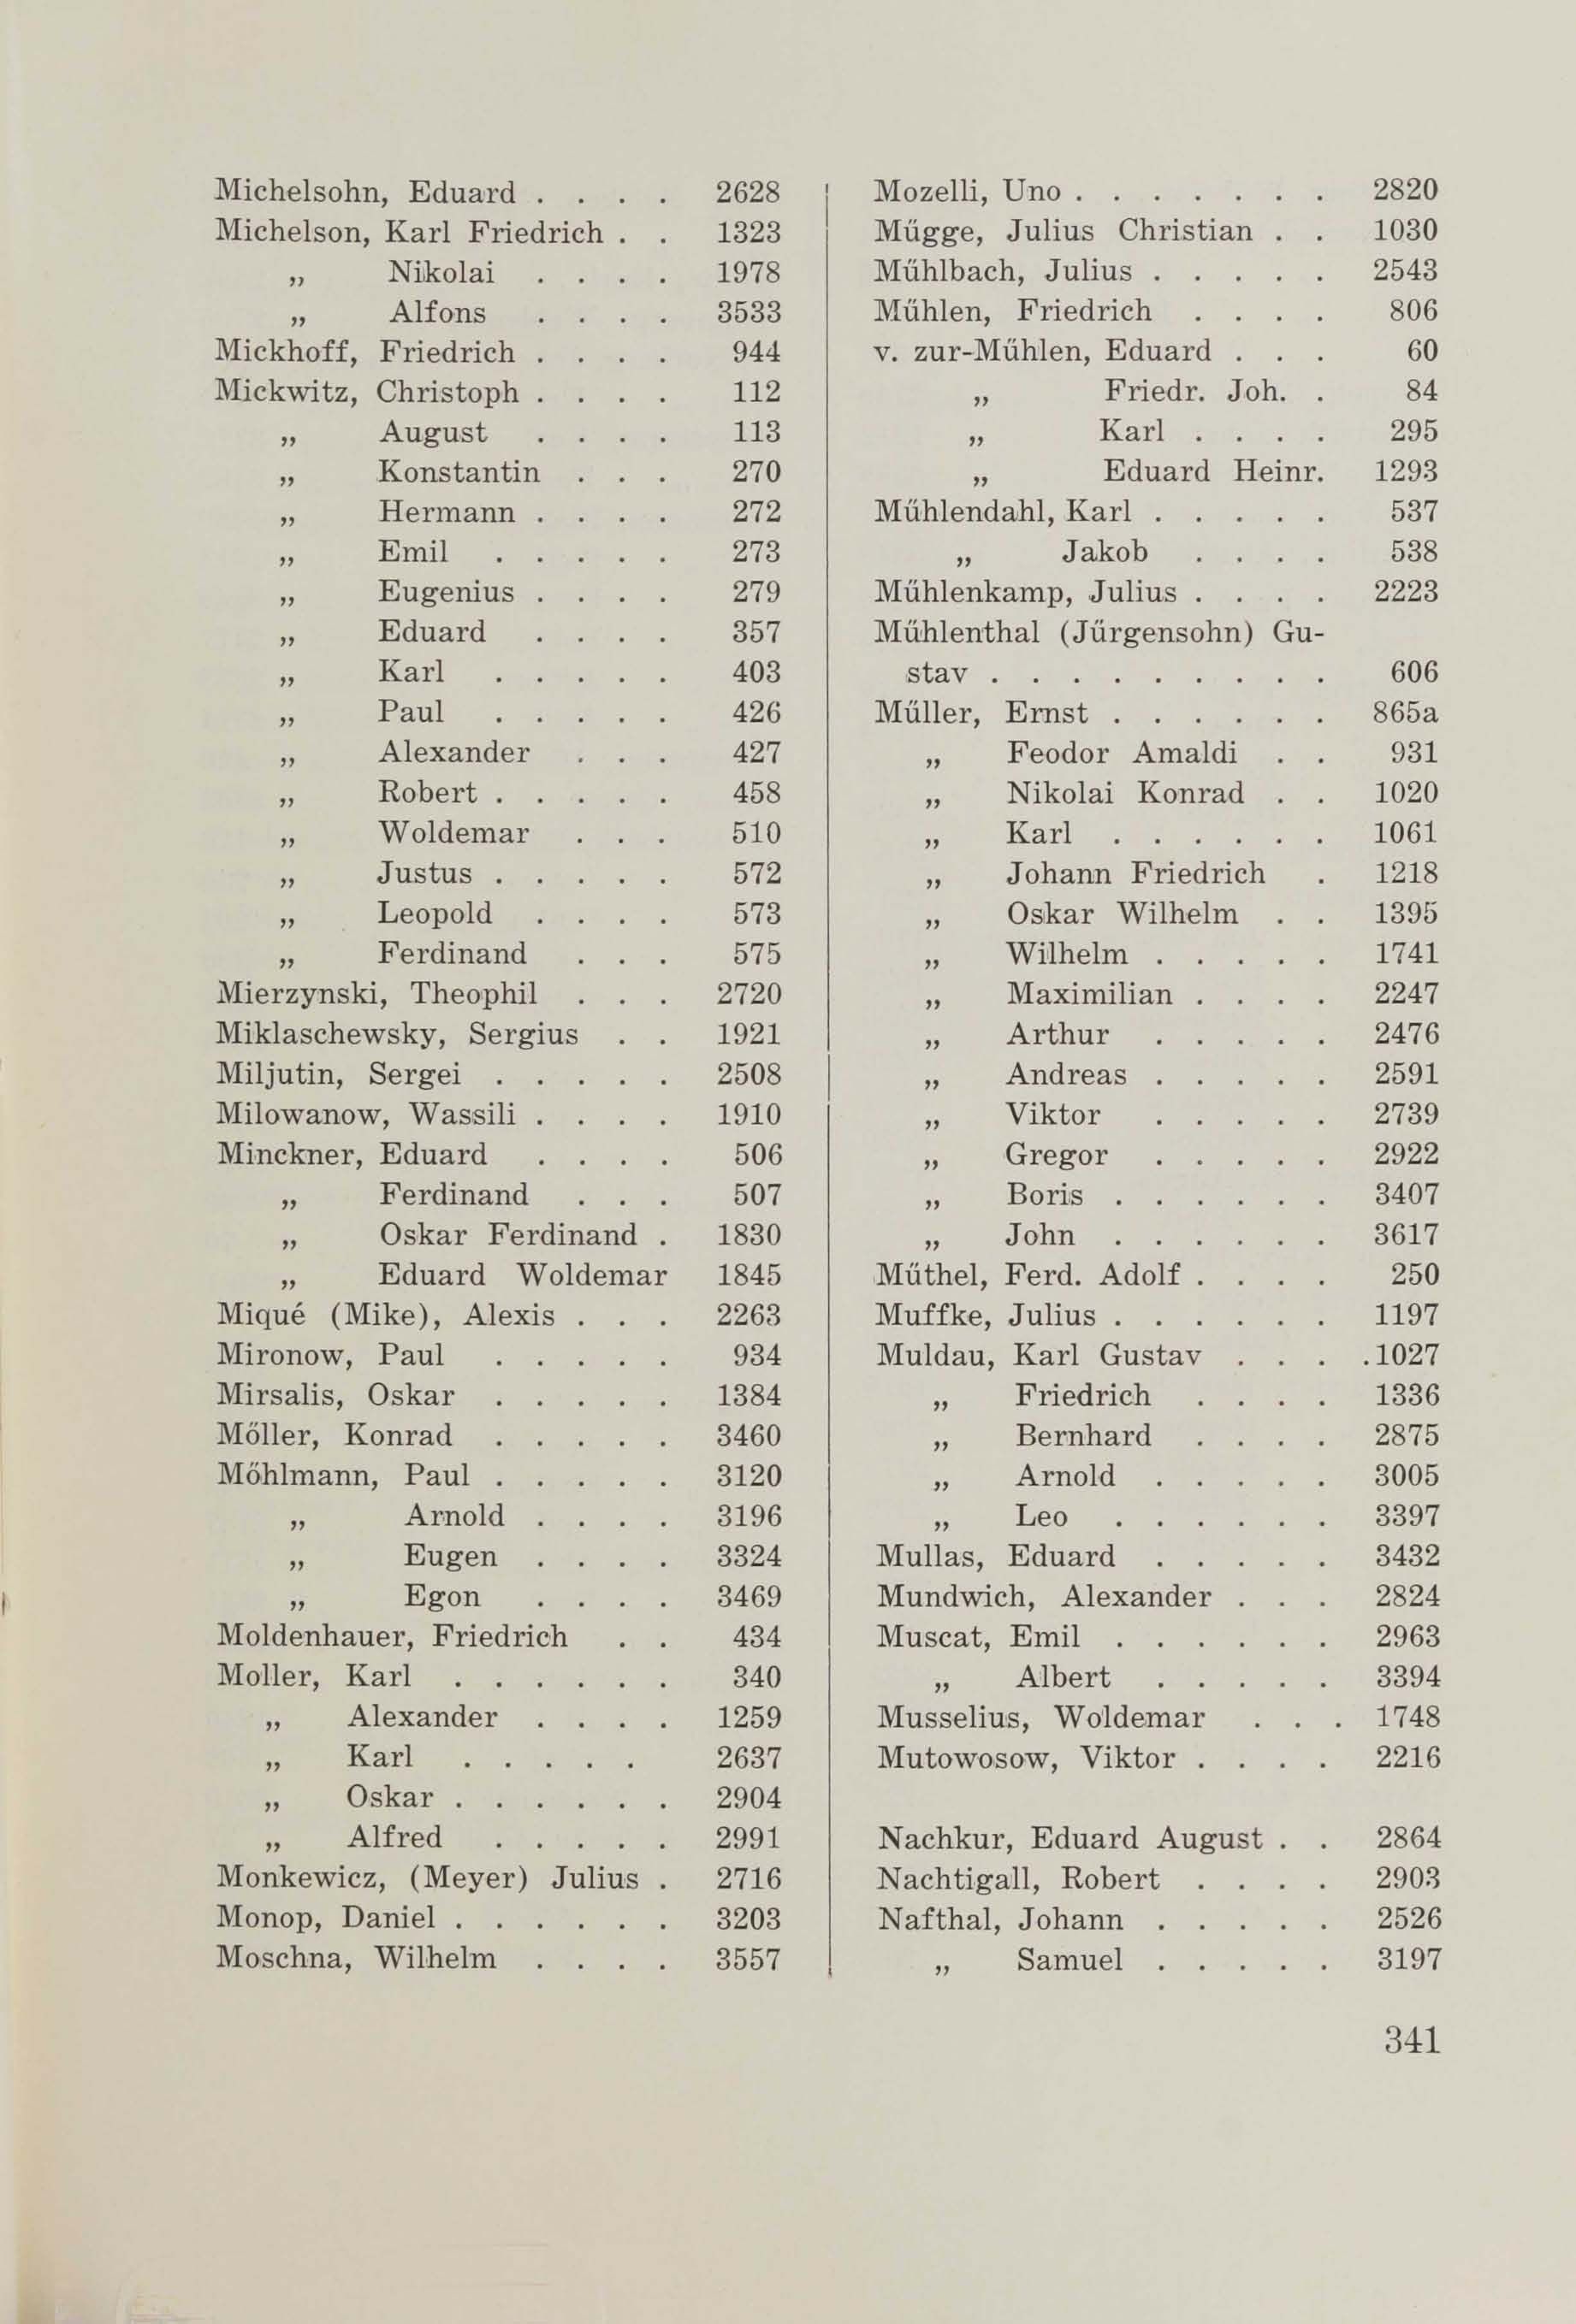 Schüler-Verzeichnis des Revalschen Gouvernements-Gymnasiums 1805–1890 (1931) | 351. (341) Main body of text